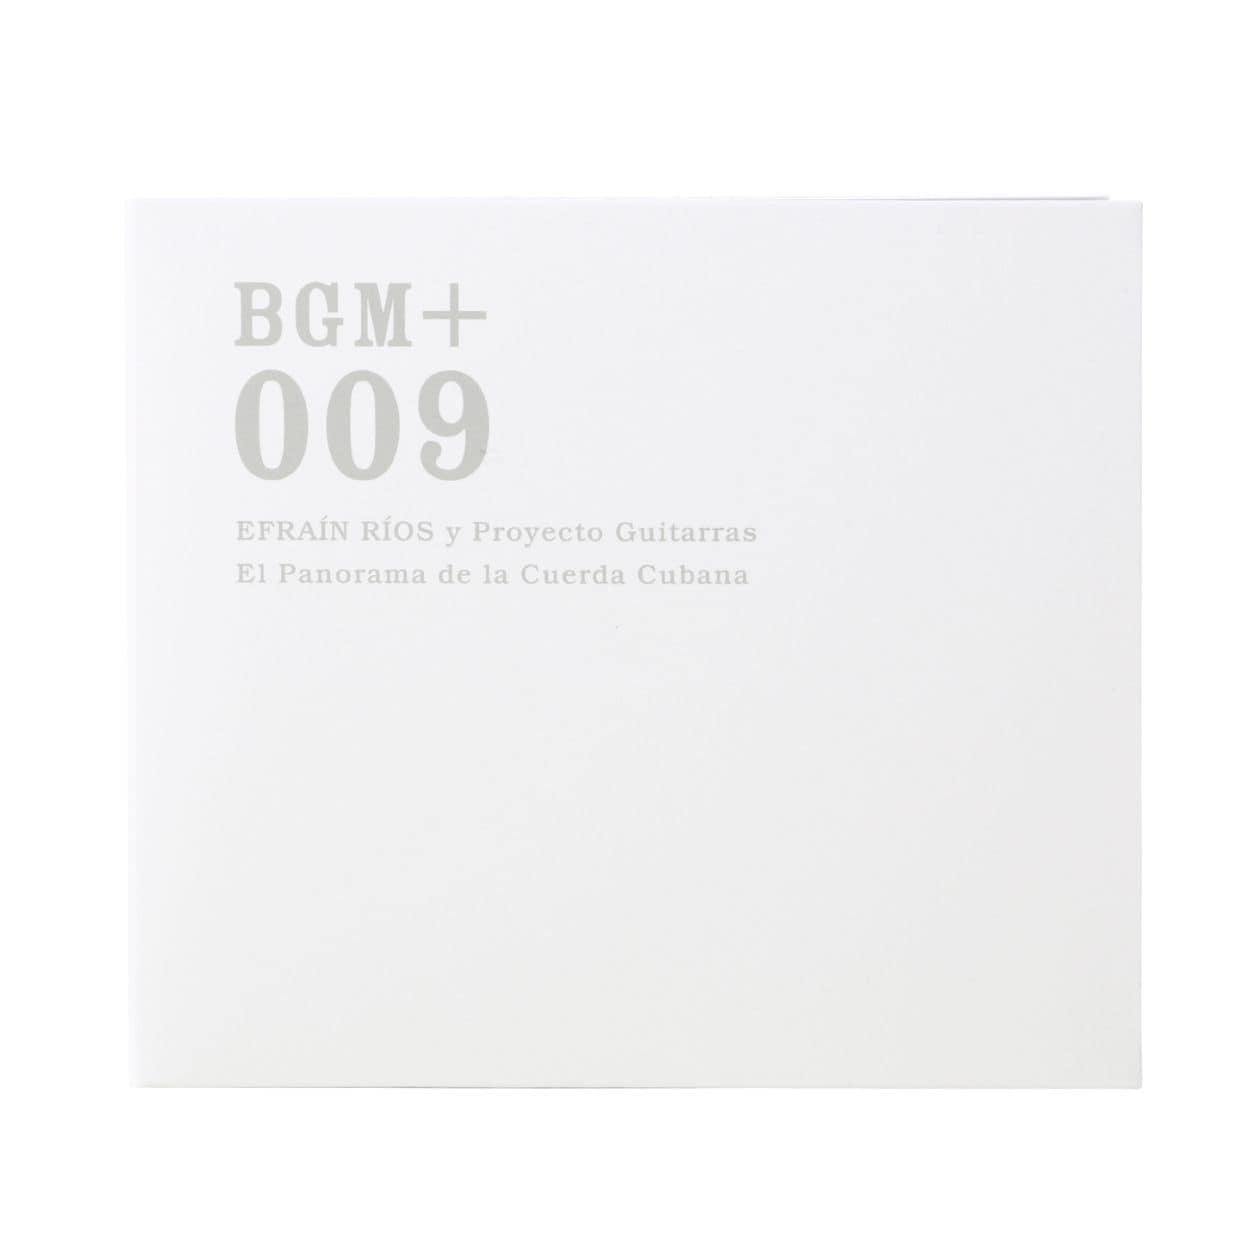 무인양품 일본 CD 음악 BGM +009 EFRAIN RIOS